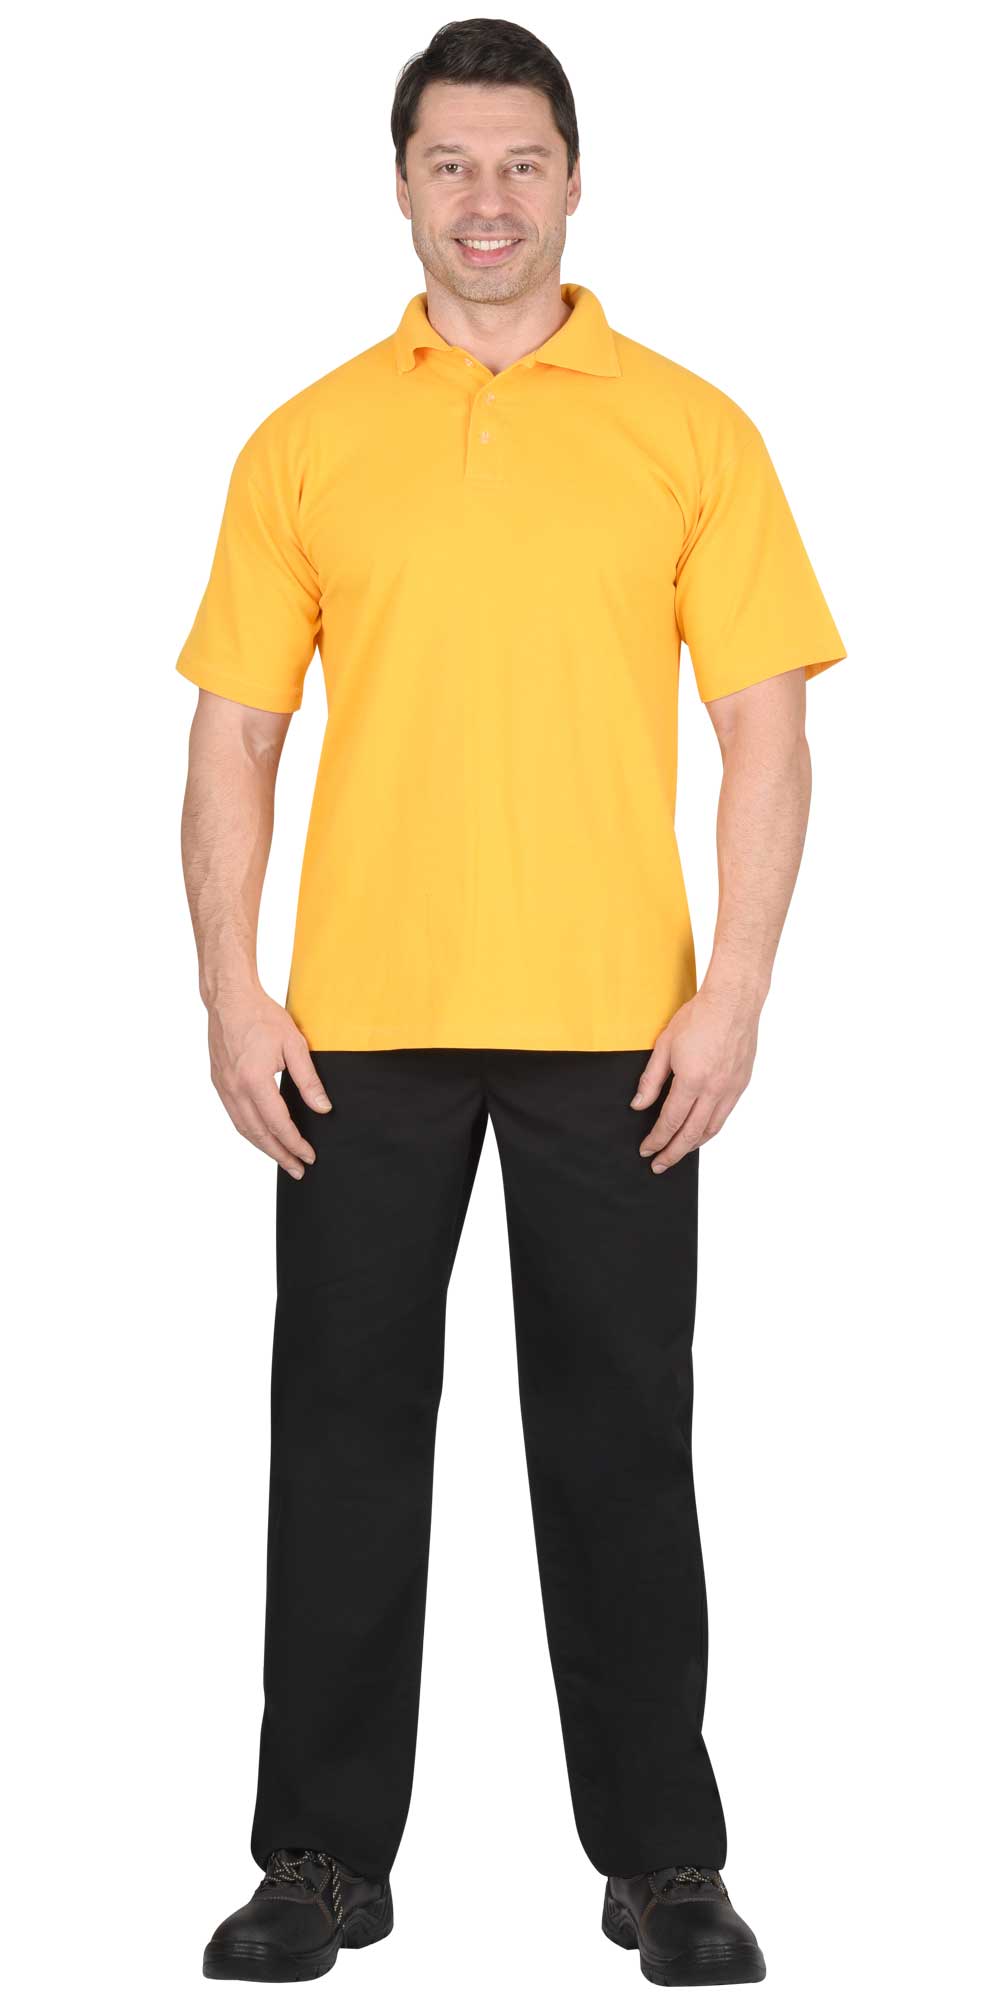 Рубашка-поло мужская, рукав короткий, цвет: желтый, плотность 180г/кв.м